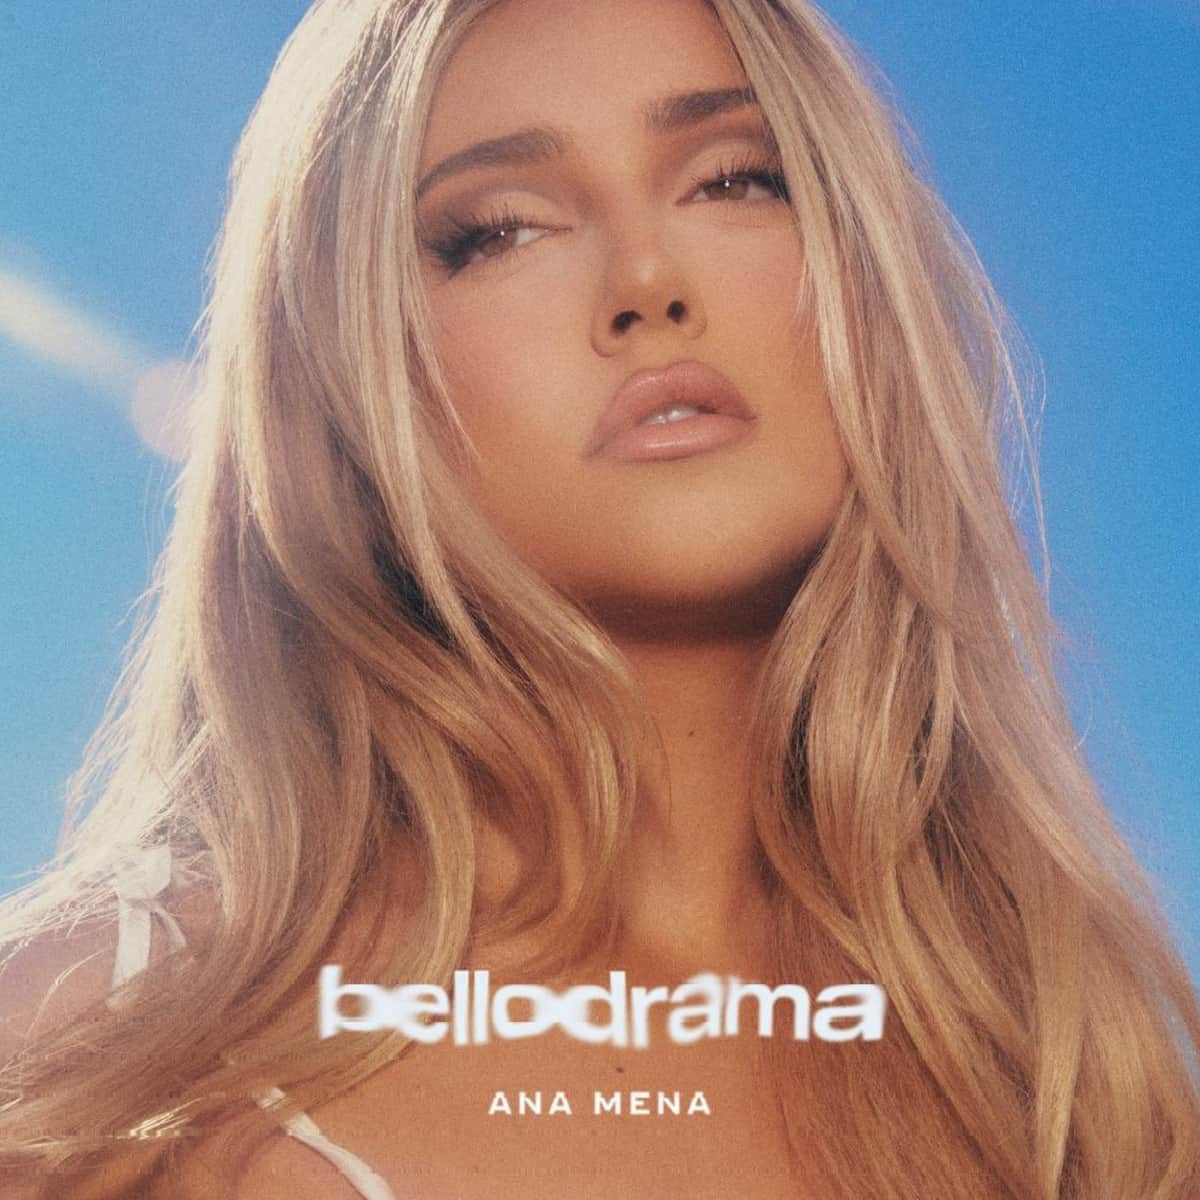 Ana Mena 2023 - Neues Album “bellodrama” veröffentlicht - hier im Bild das Album Cover mit Ana Mena in Großaufnahme